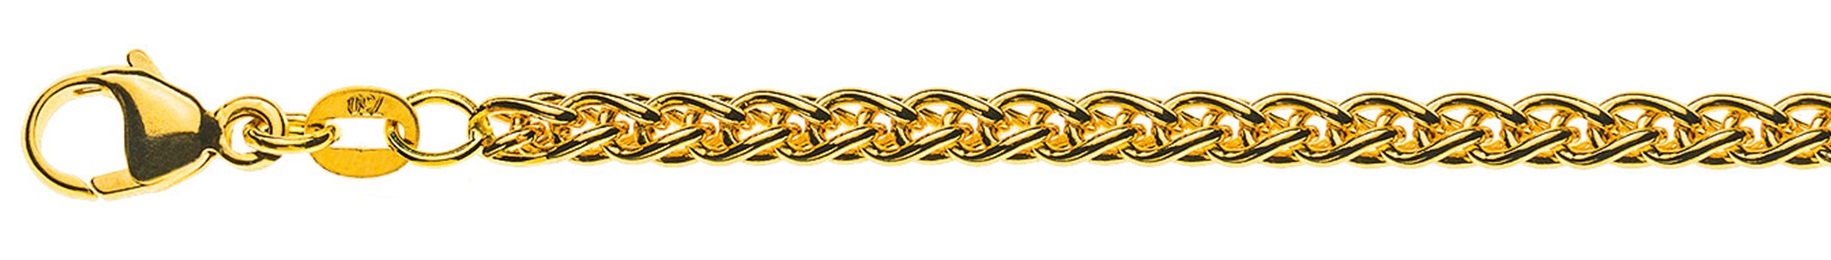 AURONOS Prestige Collier or jaune 18K chaîne câble 50cm 3.3mm